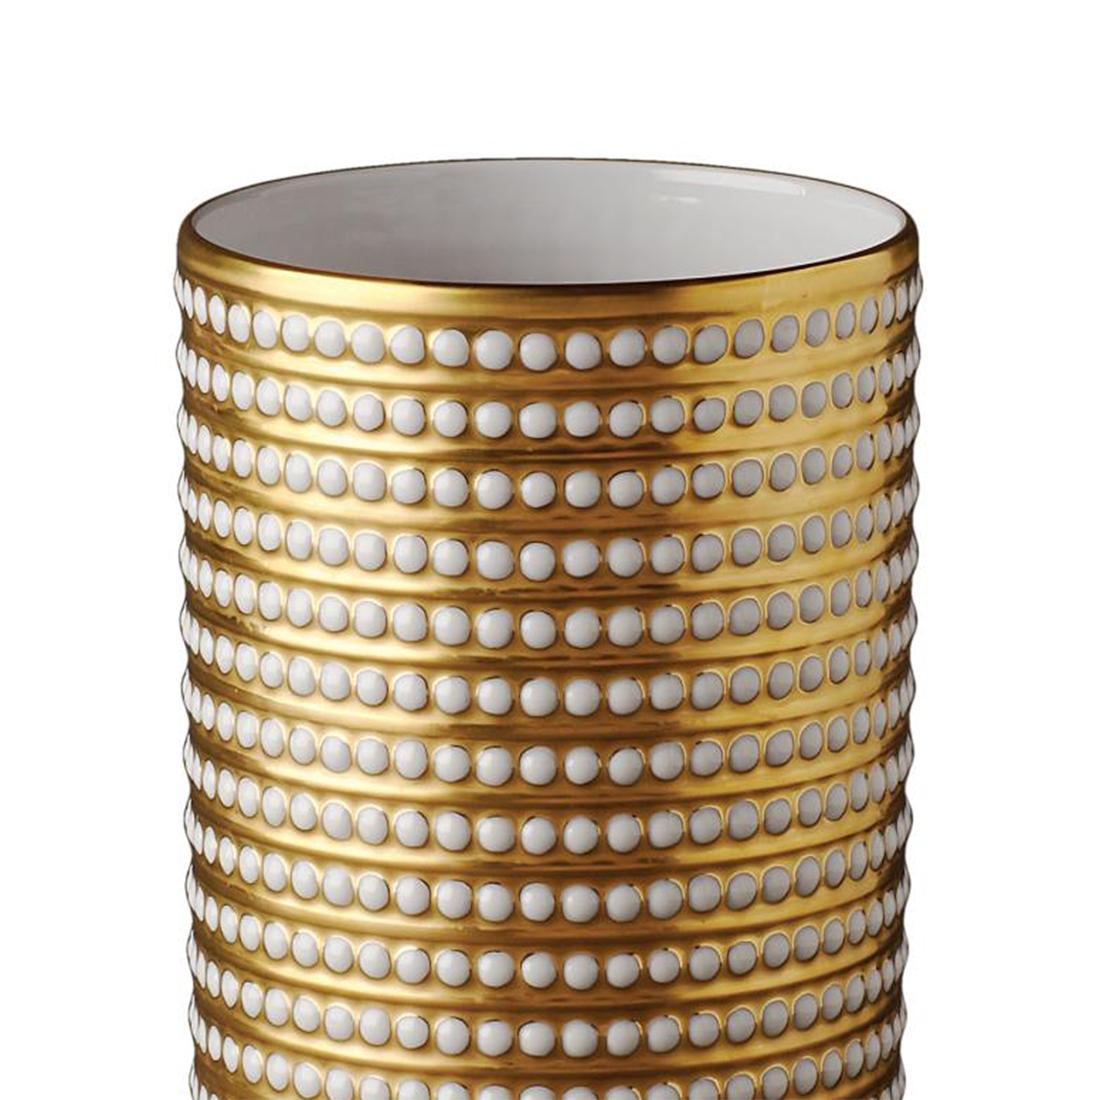 Vase mit Perlen in Limoges Porelain
vergoldet mit 24 Karat.
In Durchmesser 13 x Höhe 20cm, Preis: 1650,00€
Wird in einer luxuriösen Geschenkbox geliefert.
Auch erhältlich in Durchmesser 8x Höhe 10cm, Preis: 950,00€
Auch in Platinausführung